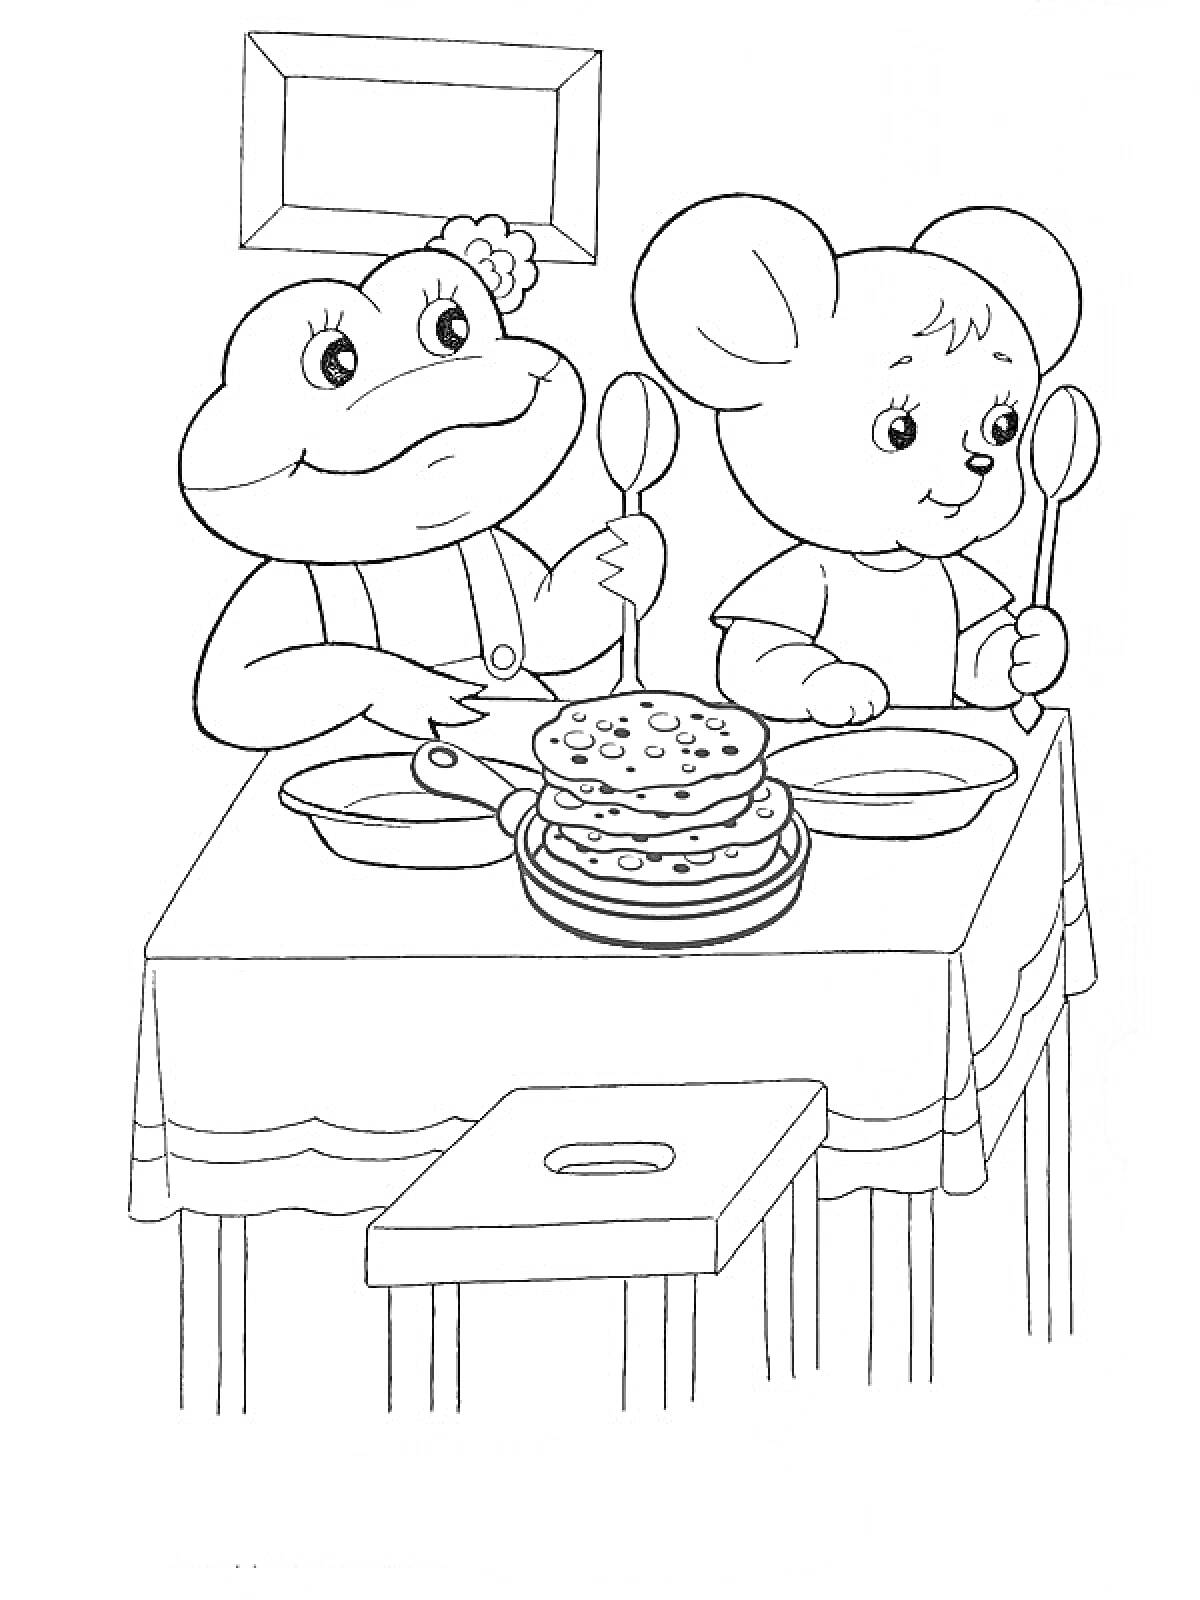 Лягушка и мышонок за столом с блинами, ложками и тарелками на фоне картины на стене